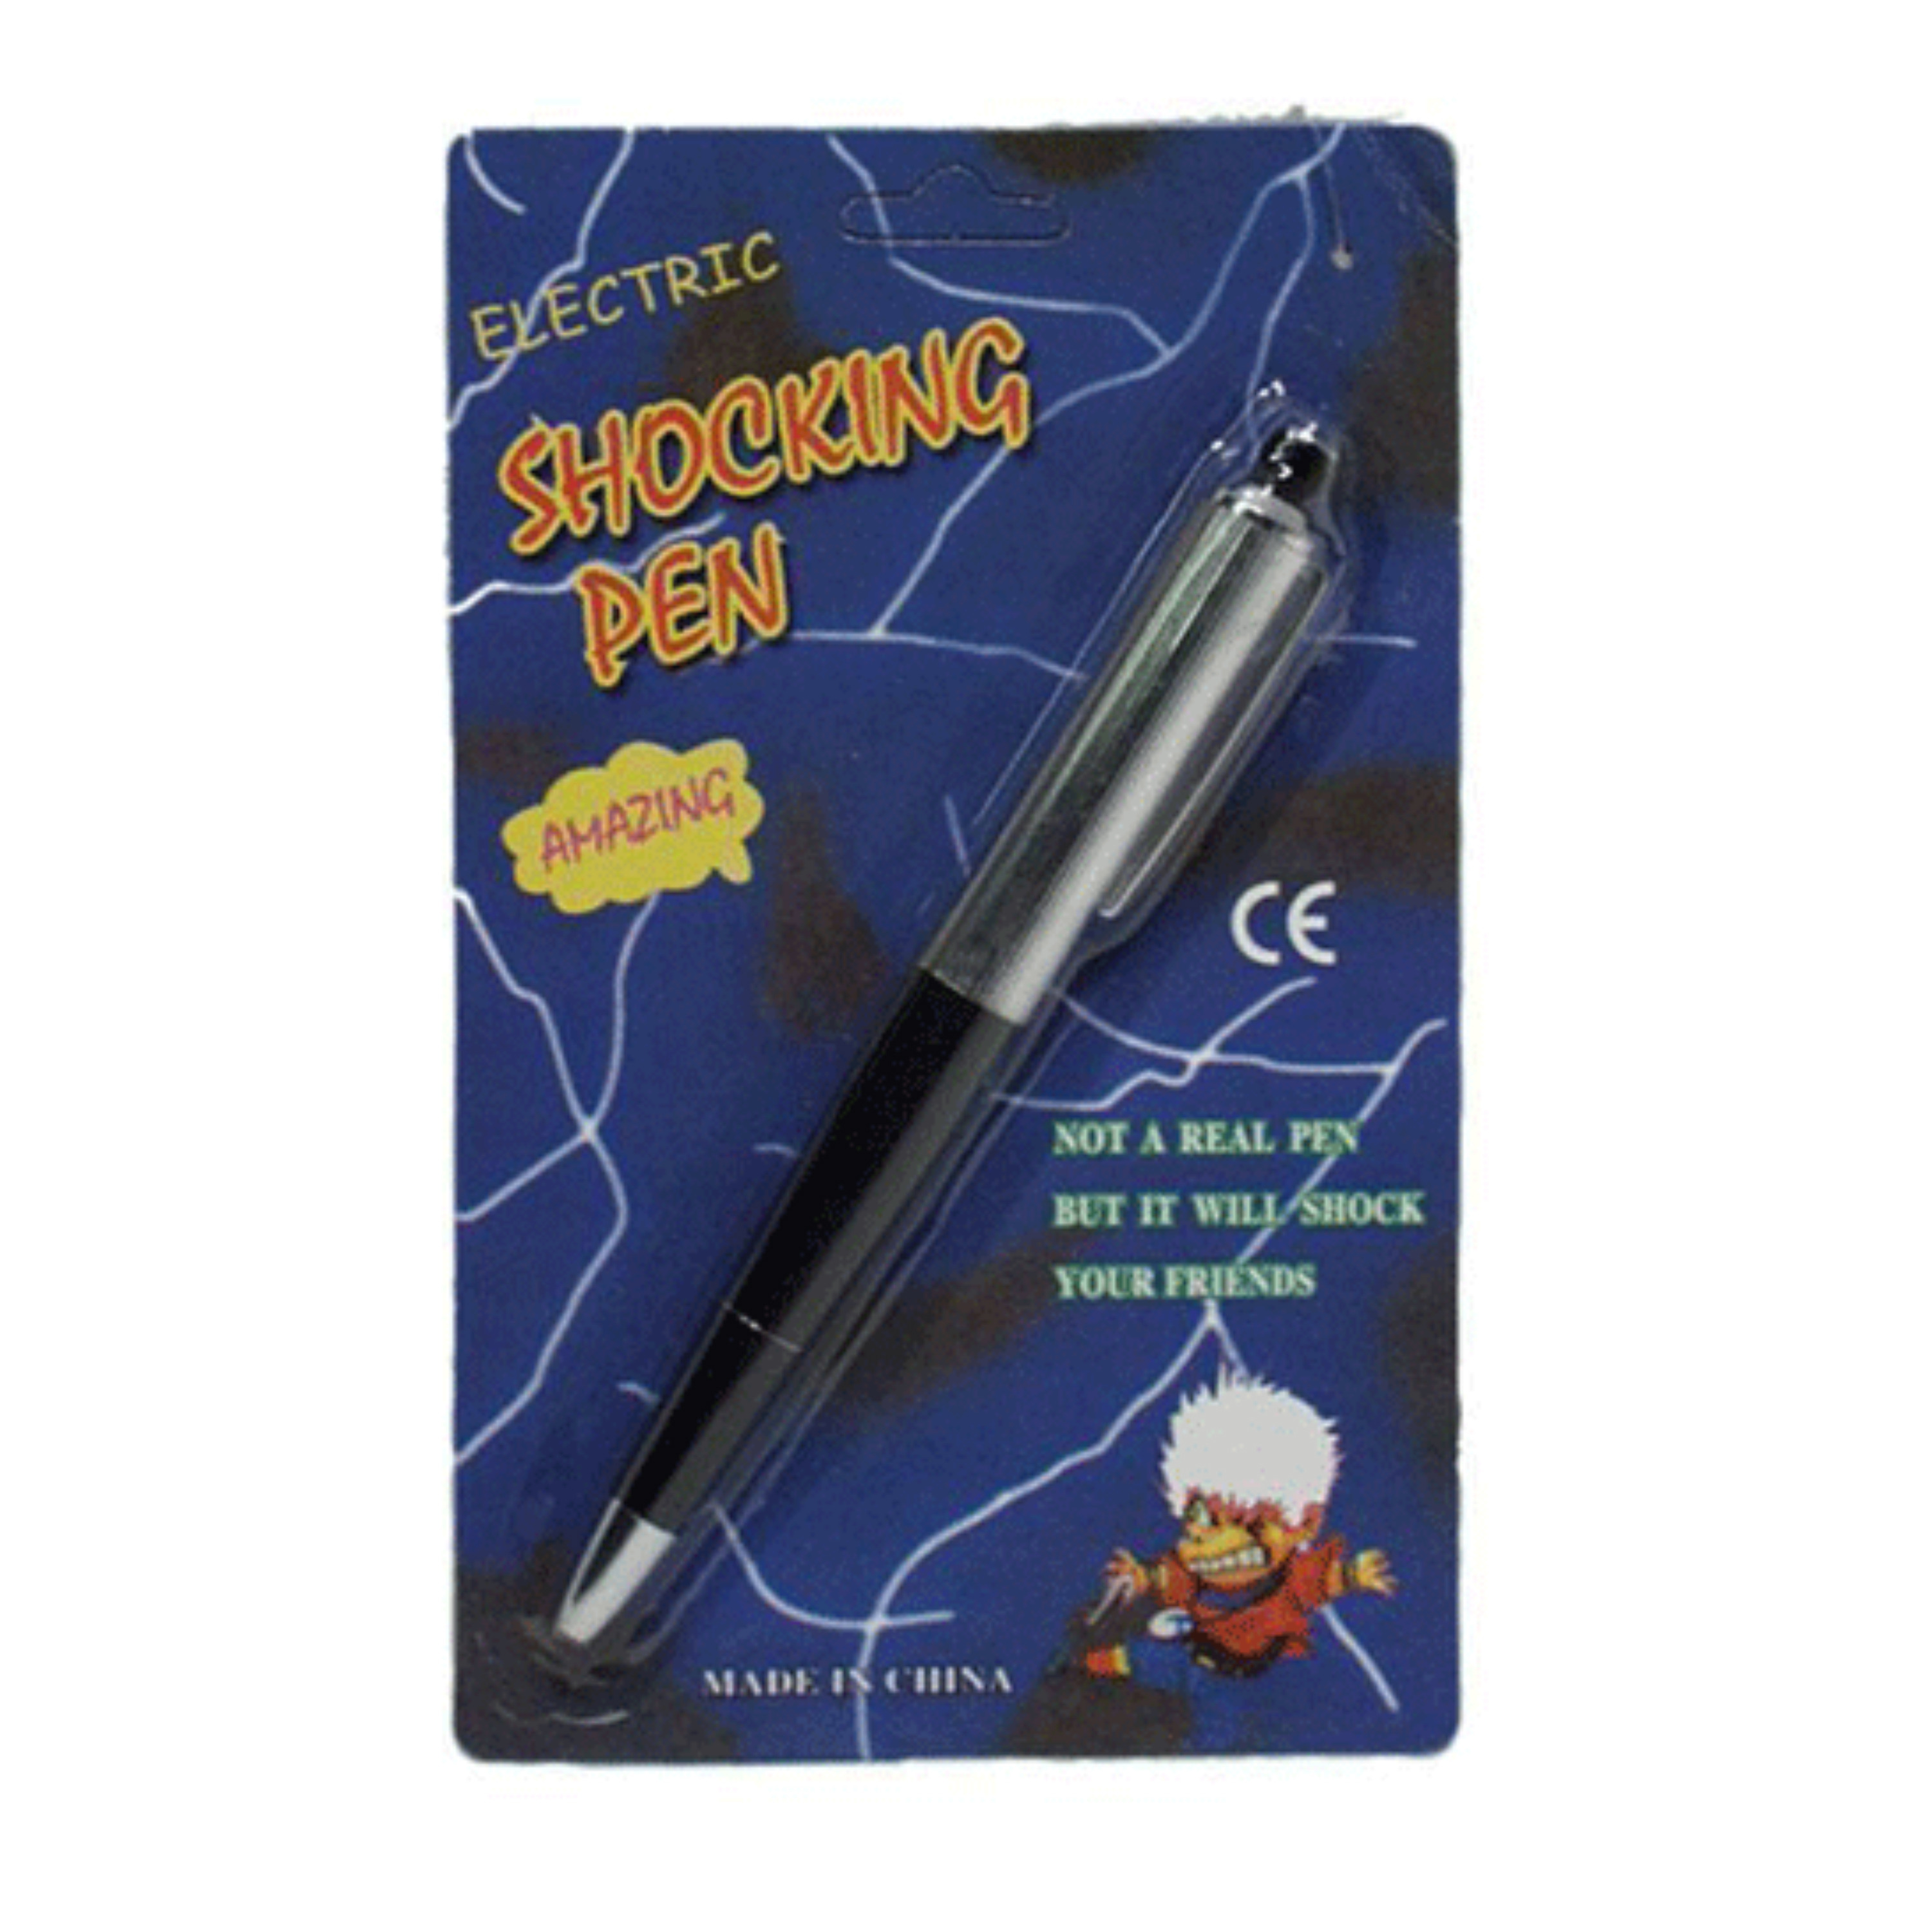 Fopartikelen Shock pen die een schok geeft als je er mee gaat schrijven fun artikelen